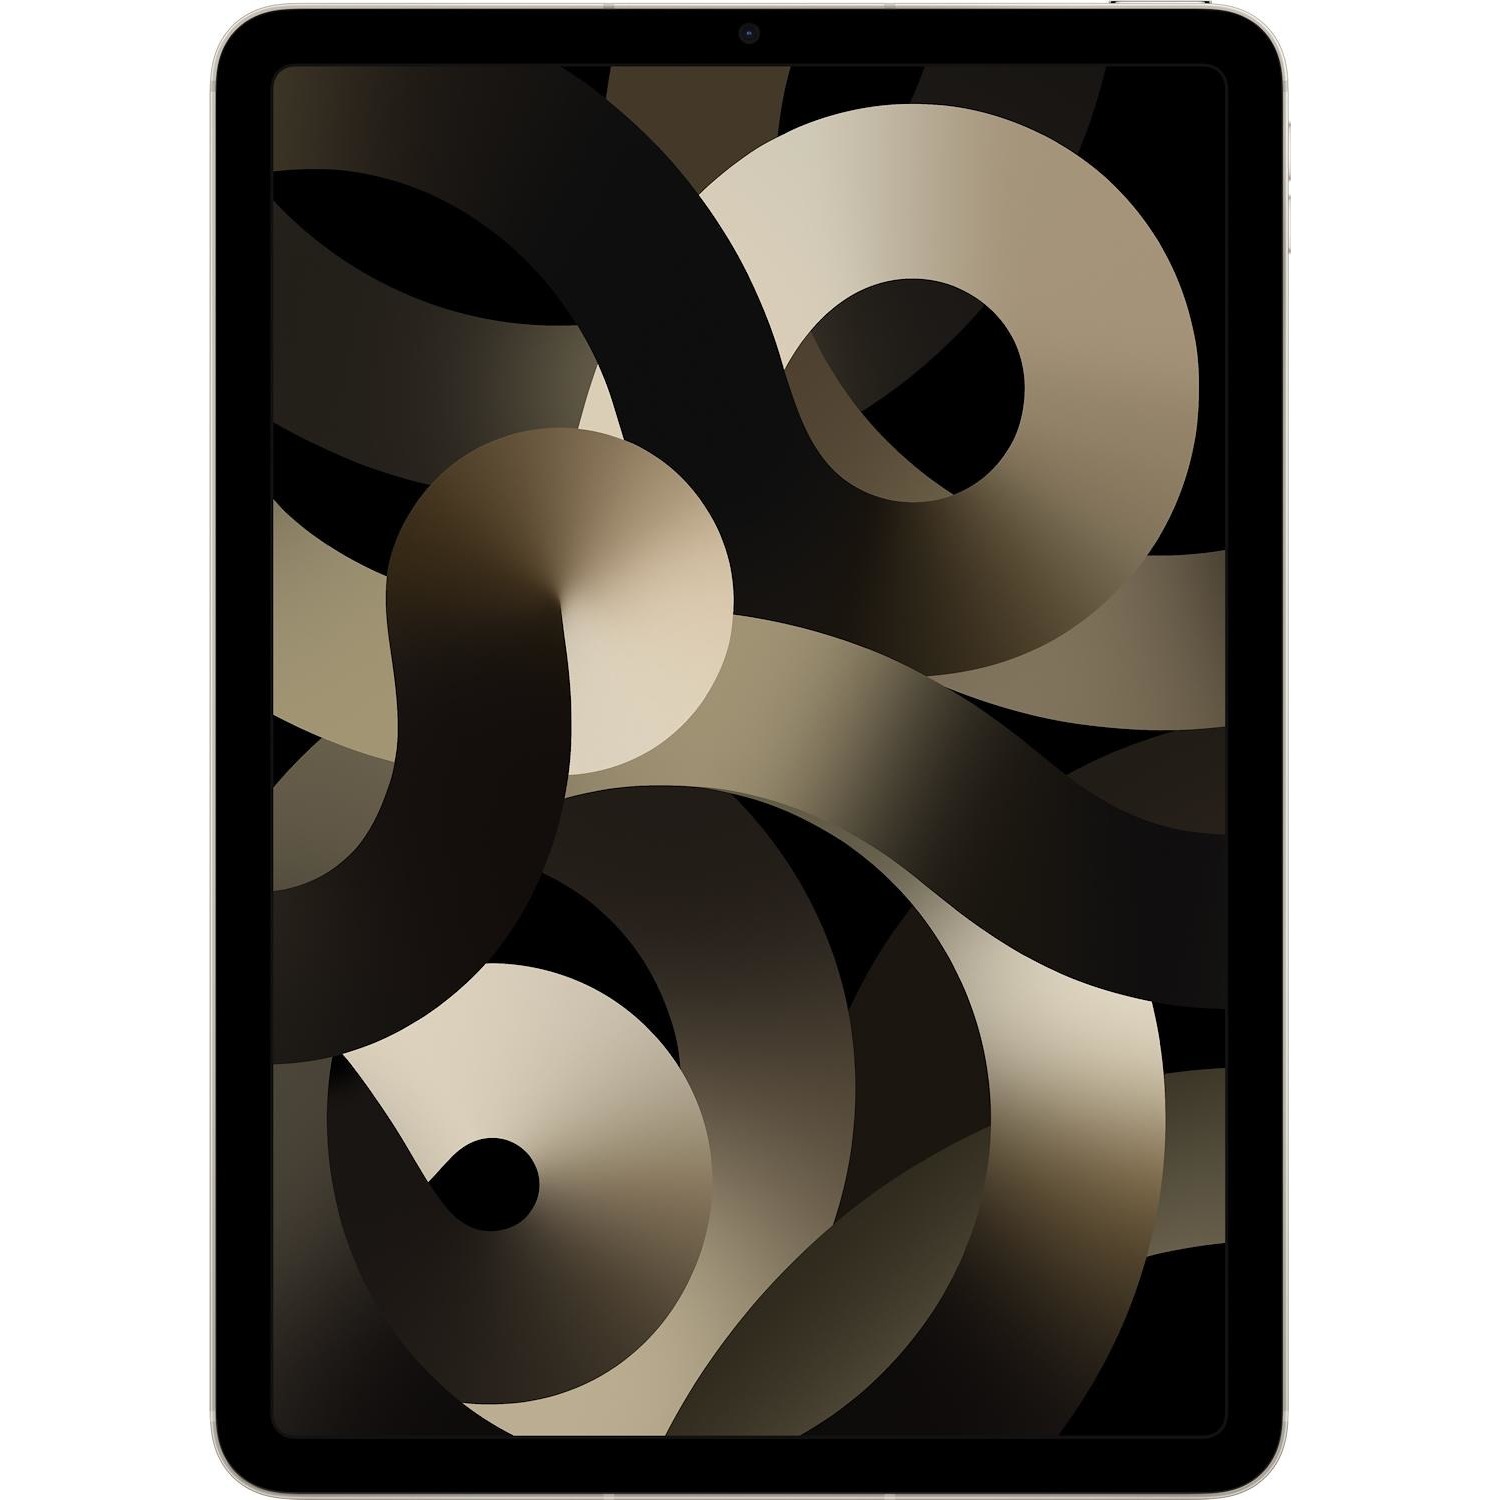 Immagine per iPad Air Apple Wi-Fi cellular 64GB bianco brillante da DIMOStore